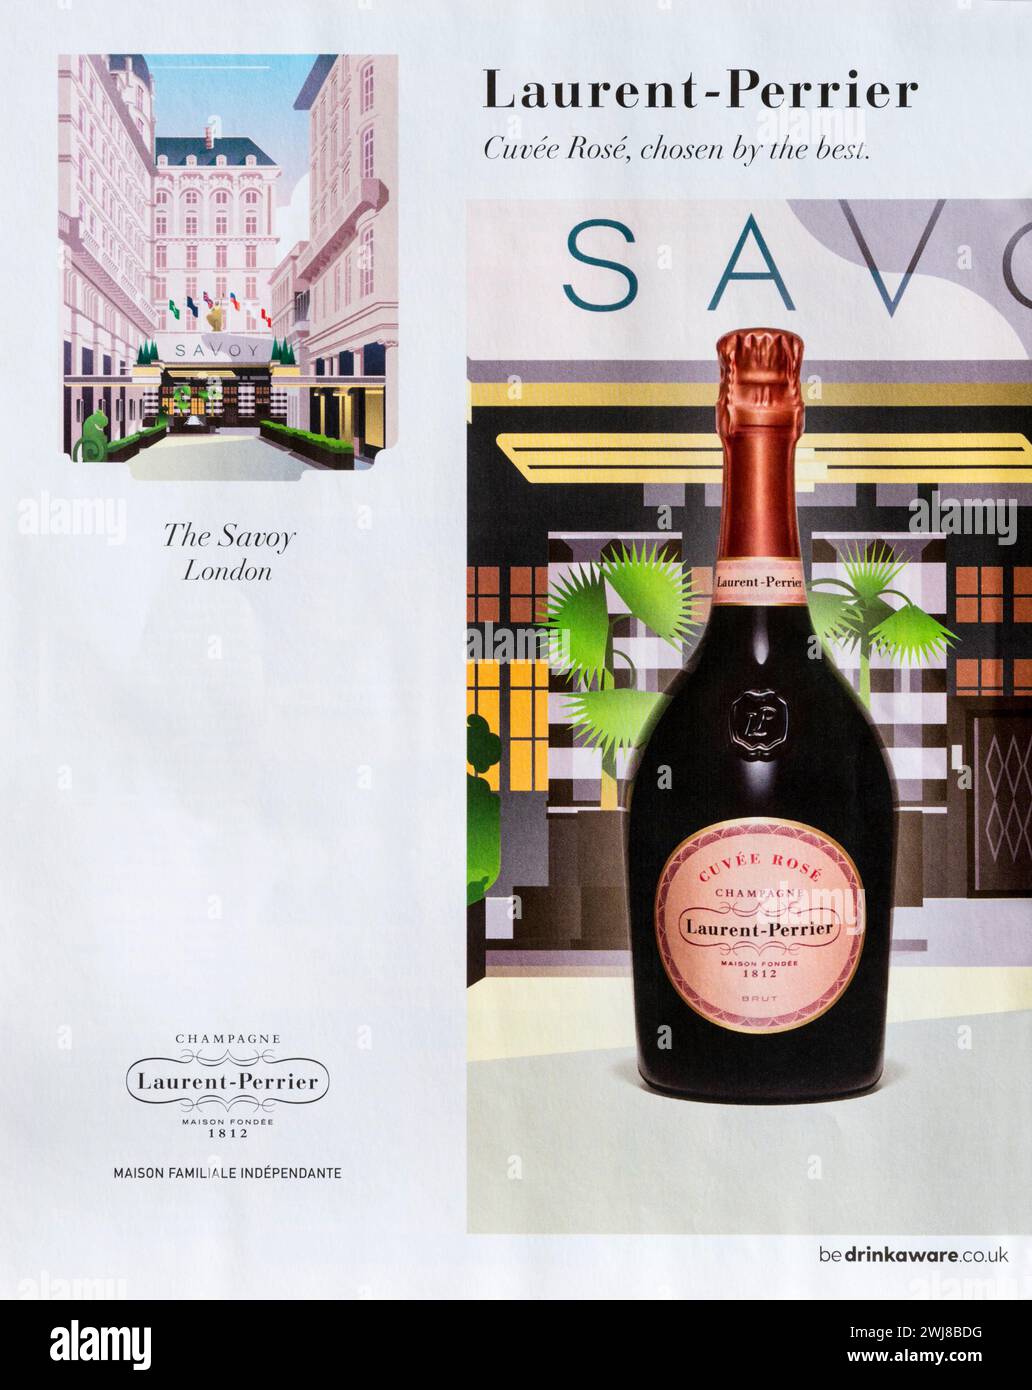 Magazine advertisement for Laurent-Perrier Cuvée Rosé Champagne. Stock Photo